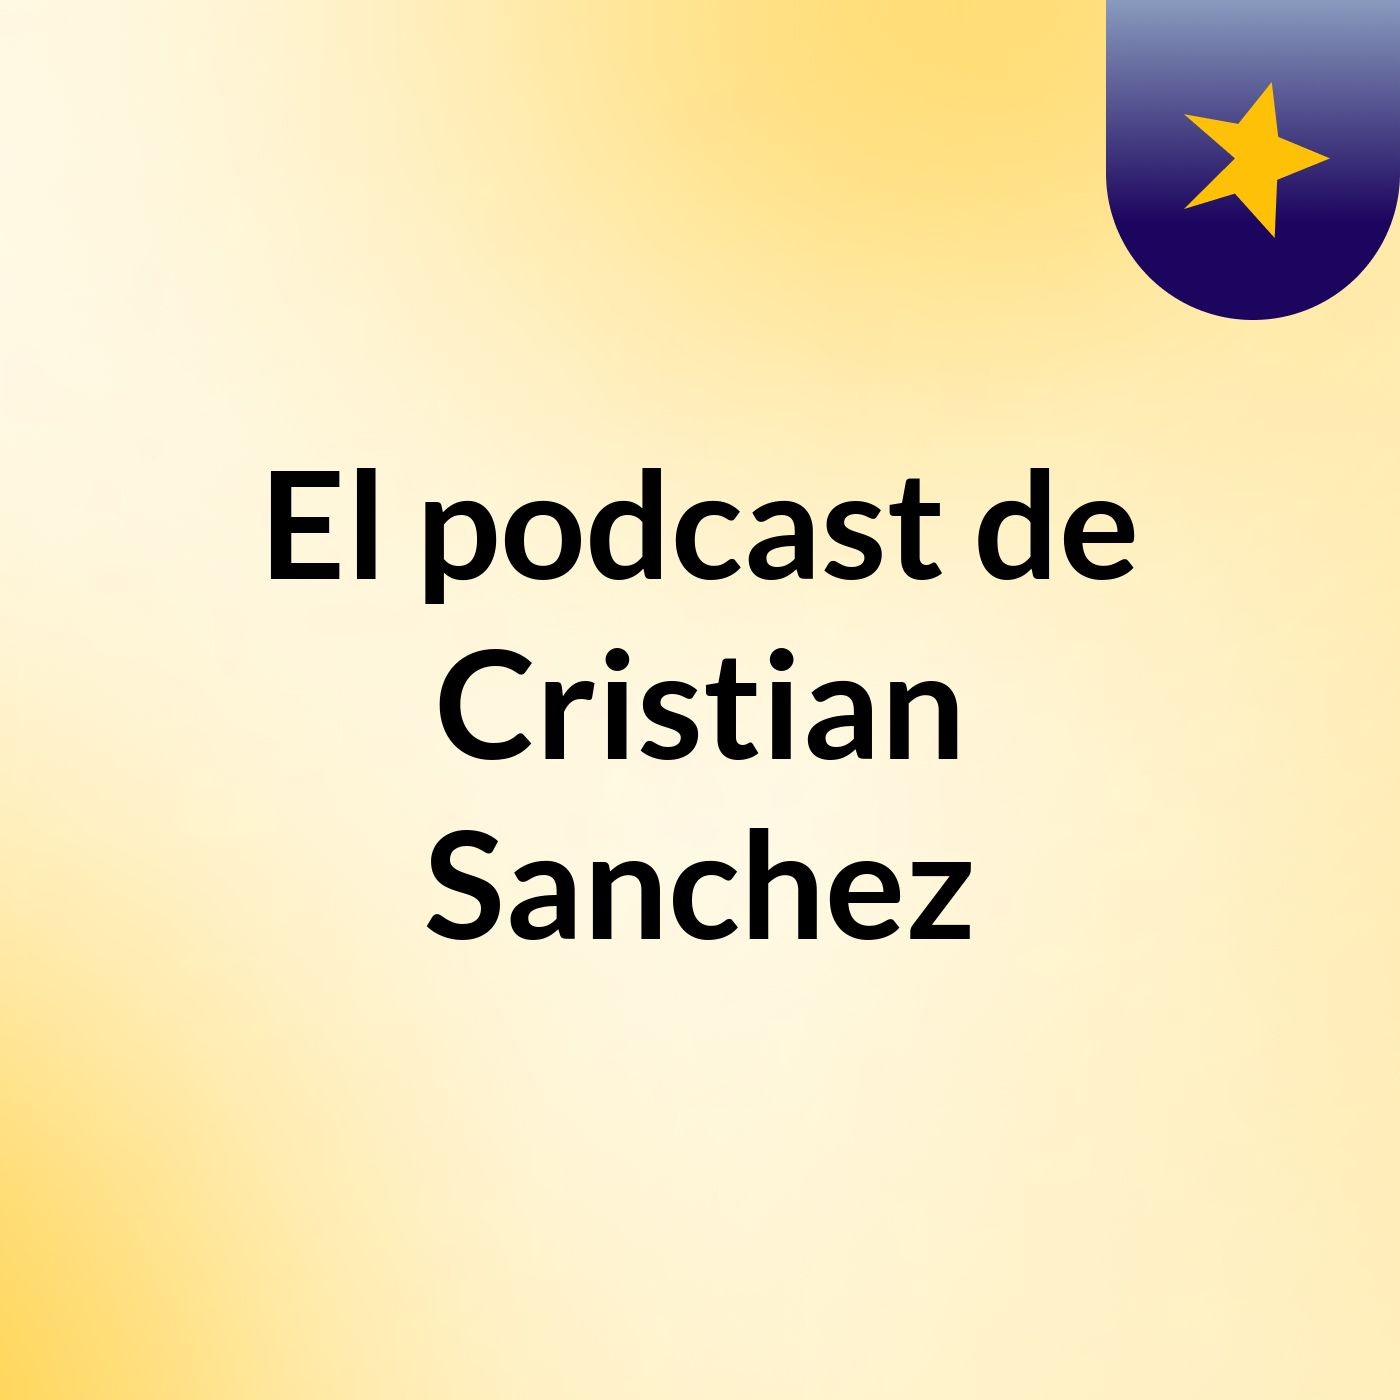 El podcast de Cristian Sanchez